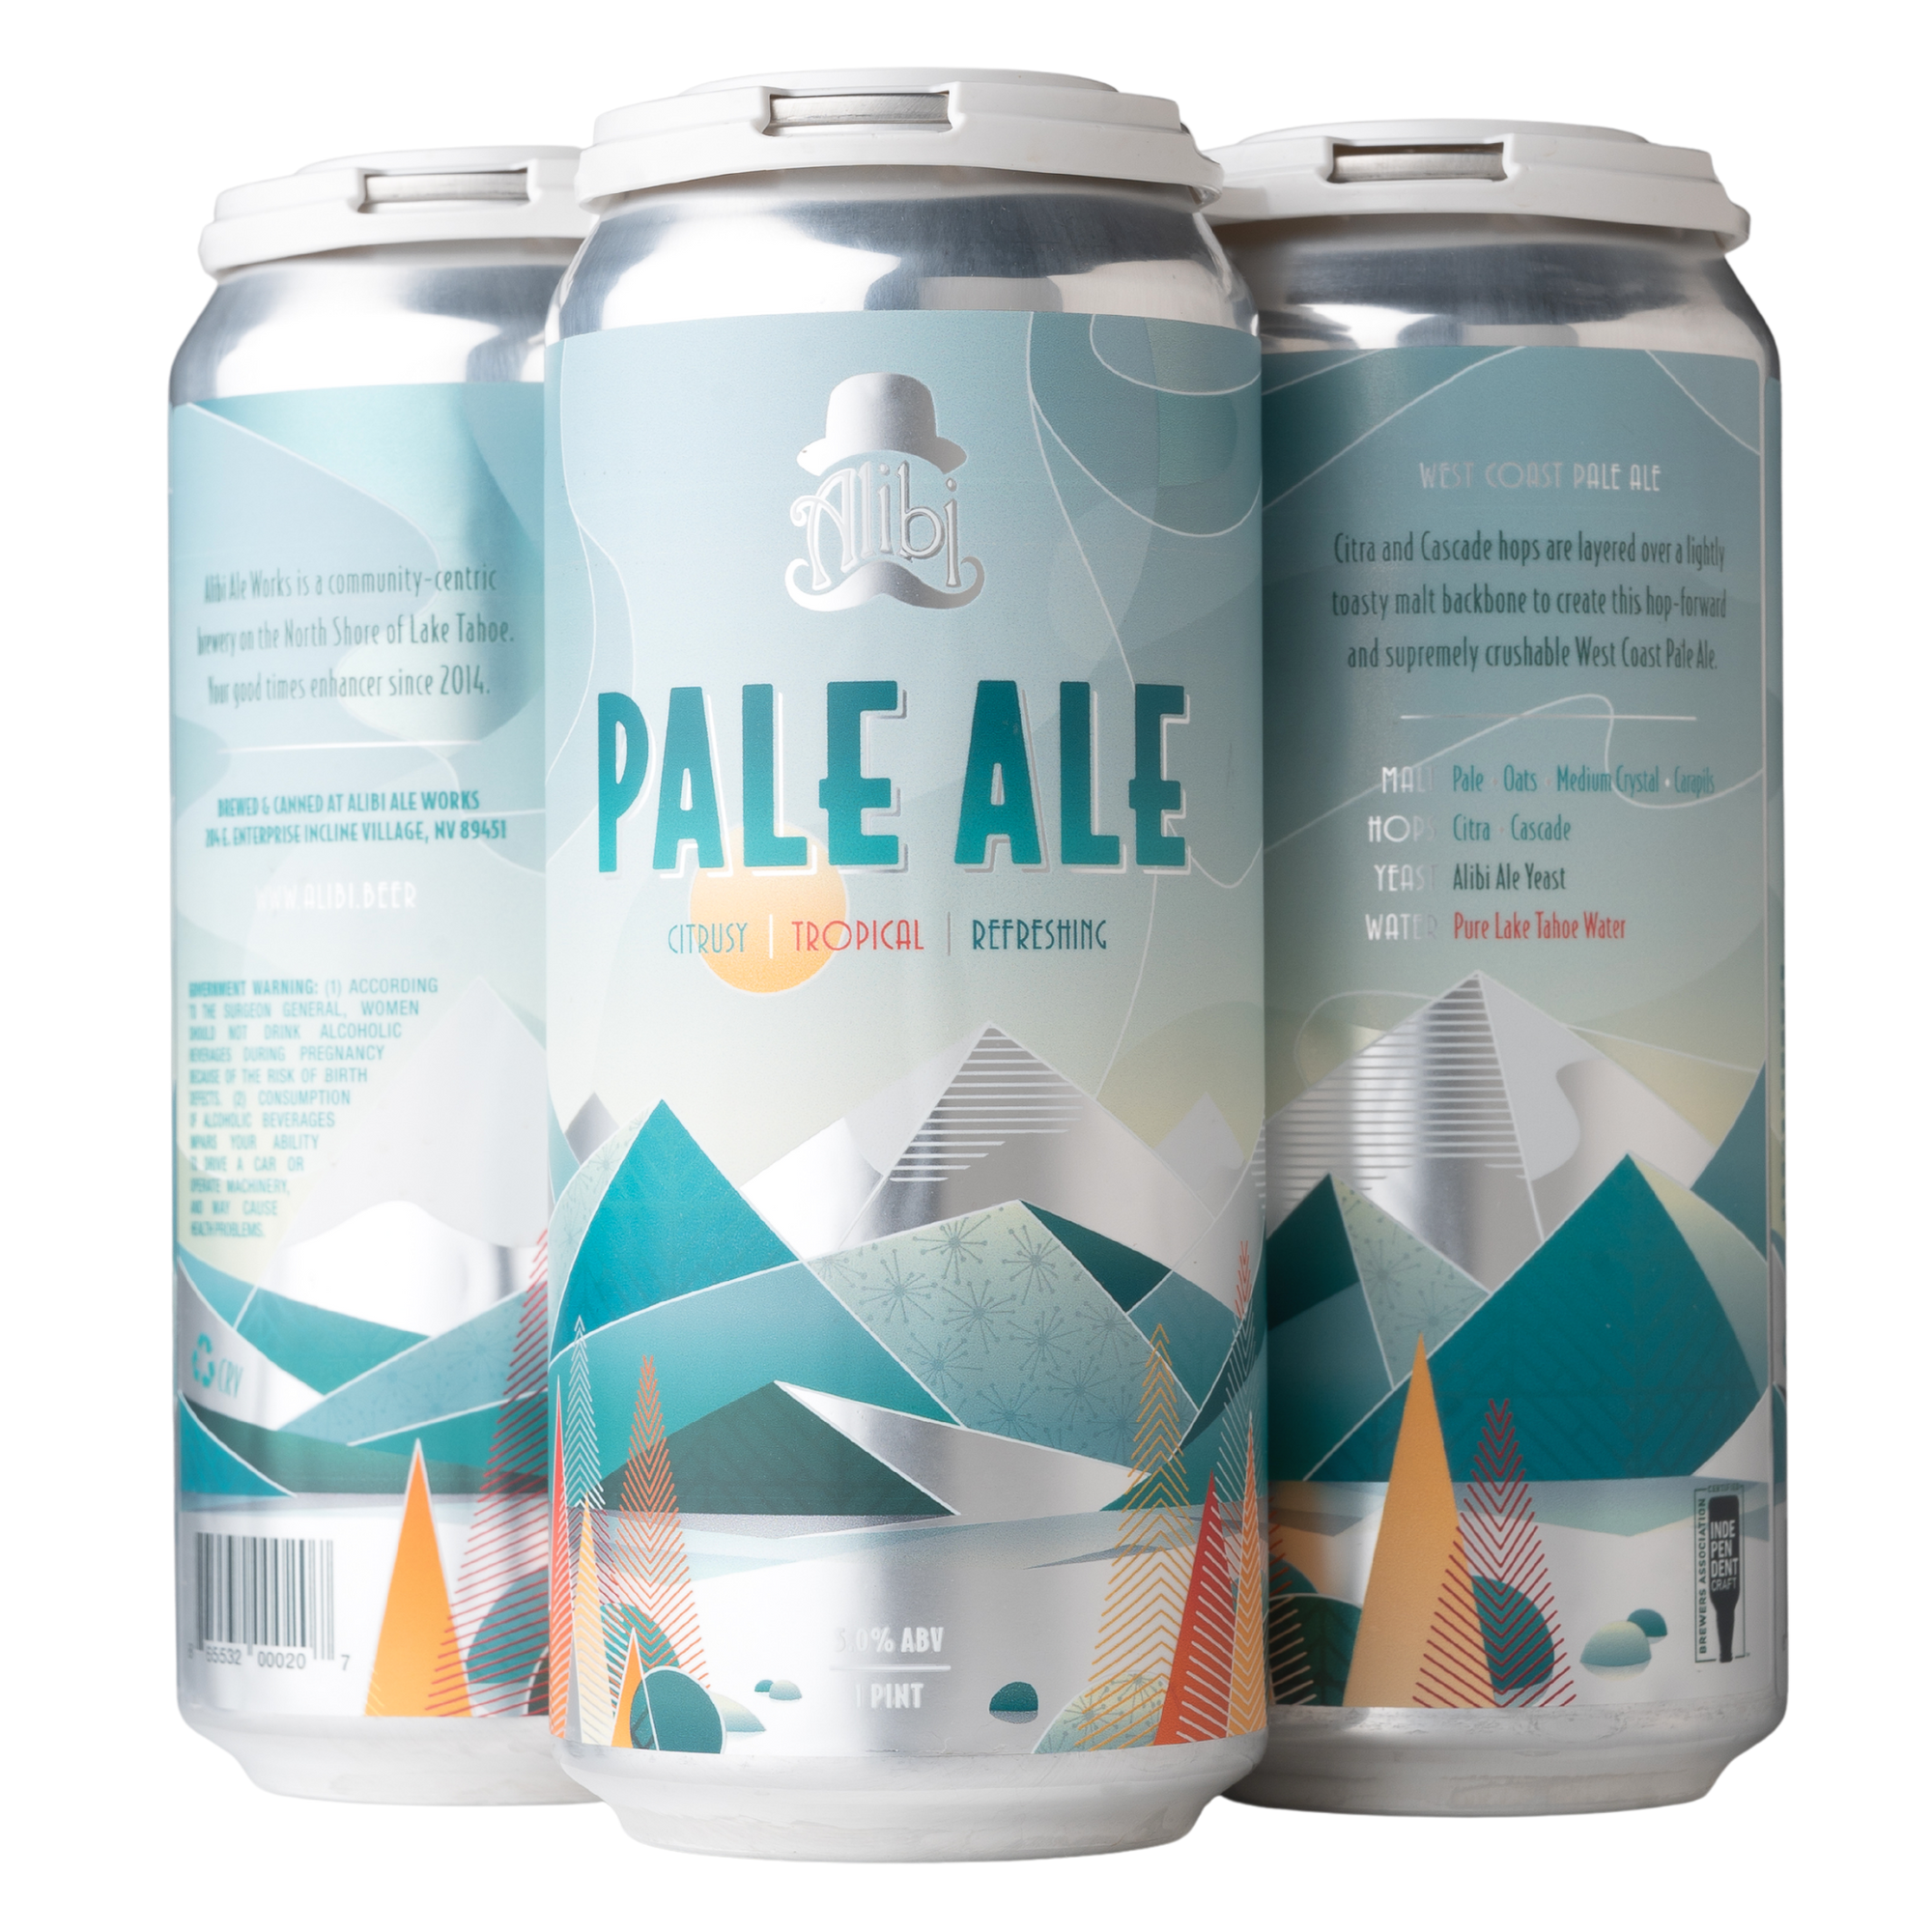 Pale Ale | West Coast Pale Ale